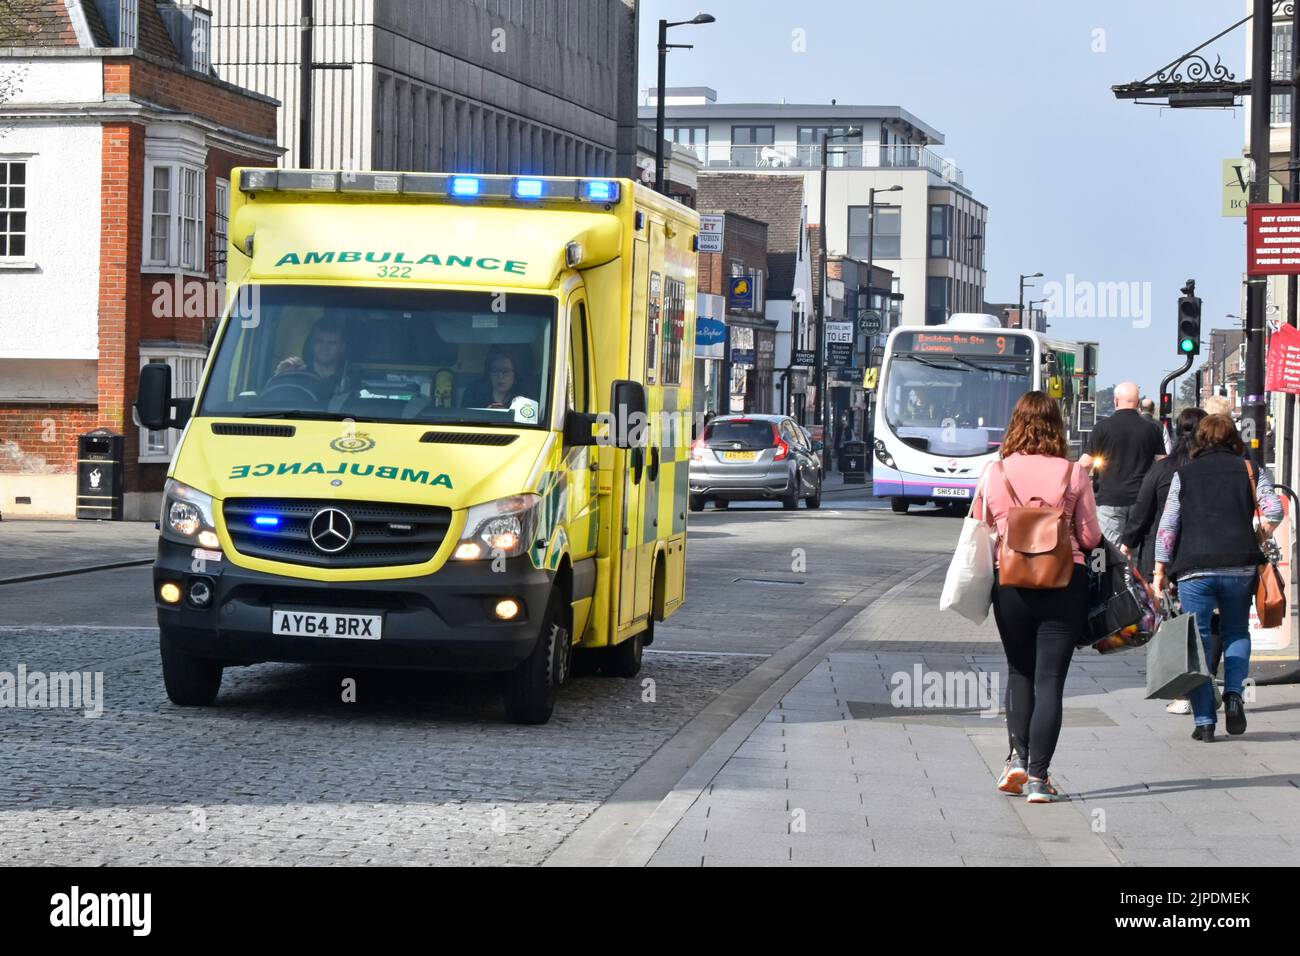 Est de l'Angleterre lumières bleues Emergency Ambulance Service NHS véhicule et équipage sur 999 voyages shoppers et bus à High Street Brentwood Essex Angleterre Royaume-Uni Banque D'Images